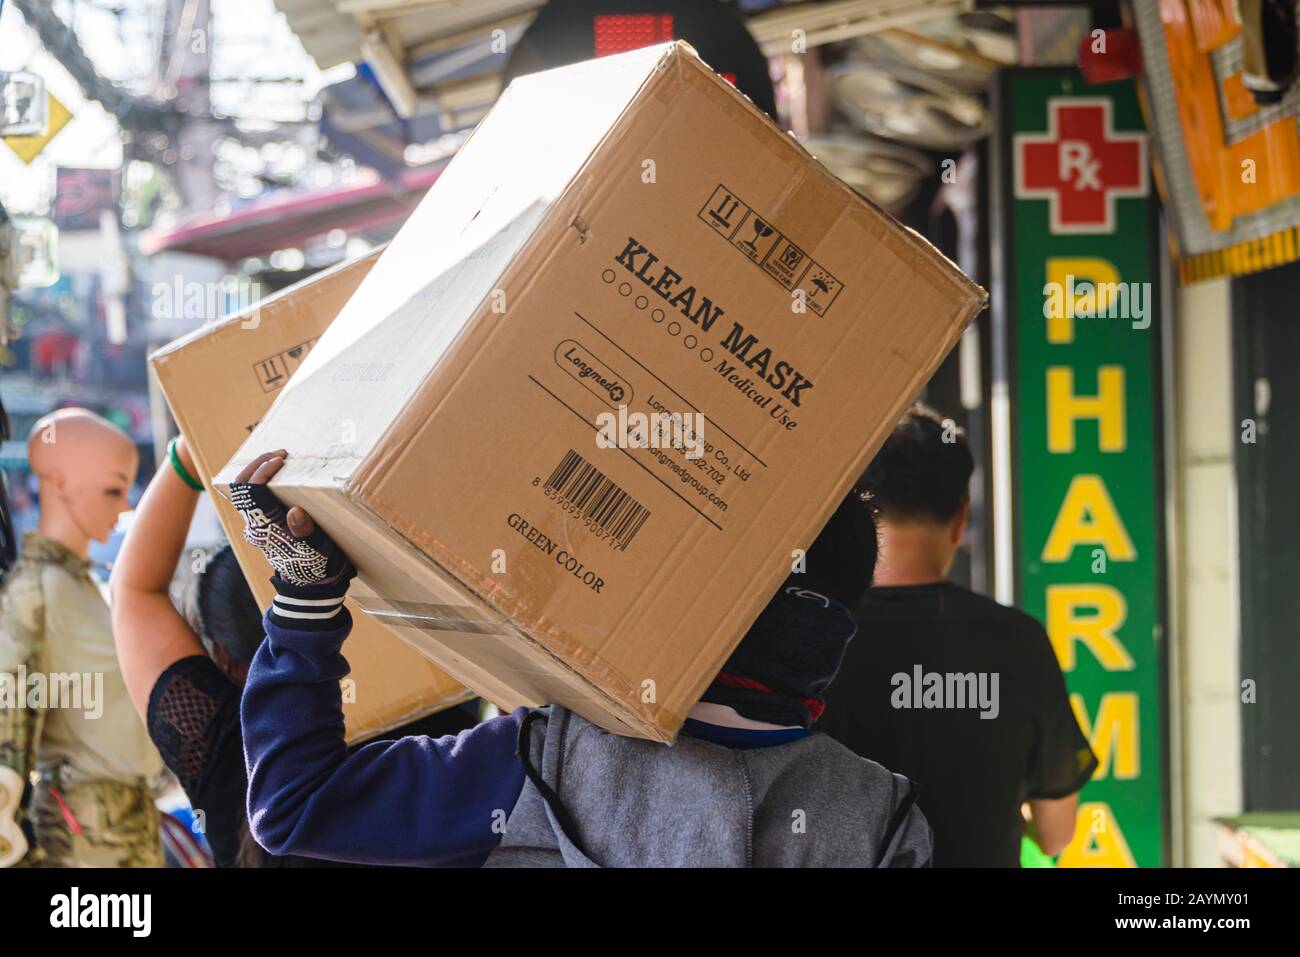 Los hombres entregan grandes cajas de máscaras faciales a una farmacia en el casco antiguo de Phuket durante la pandemia COVID-19 de Coronavirus, Bangkok. Foto de stock